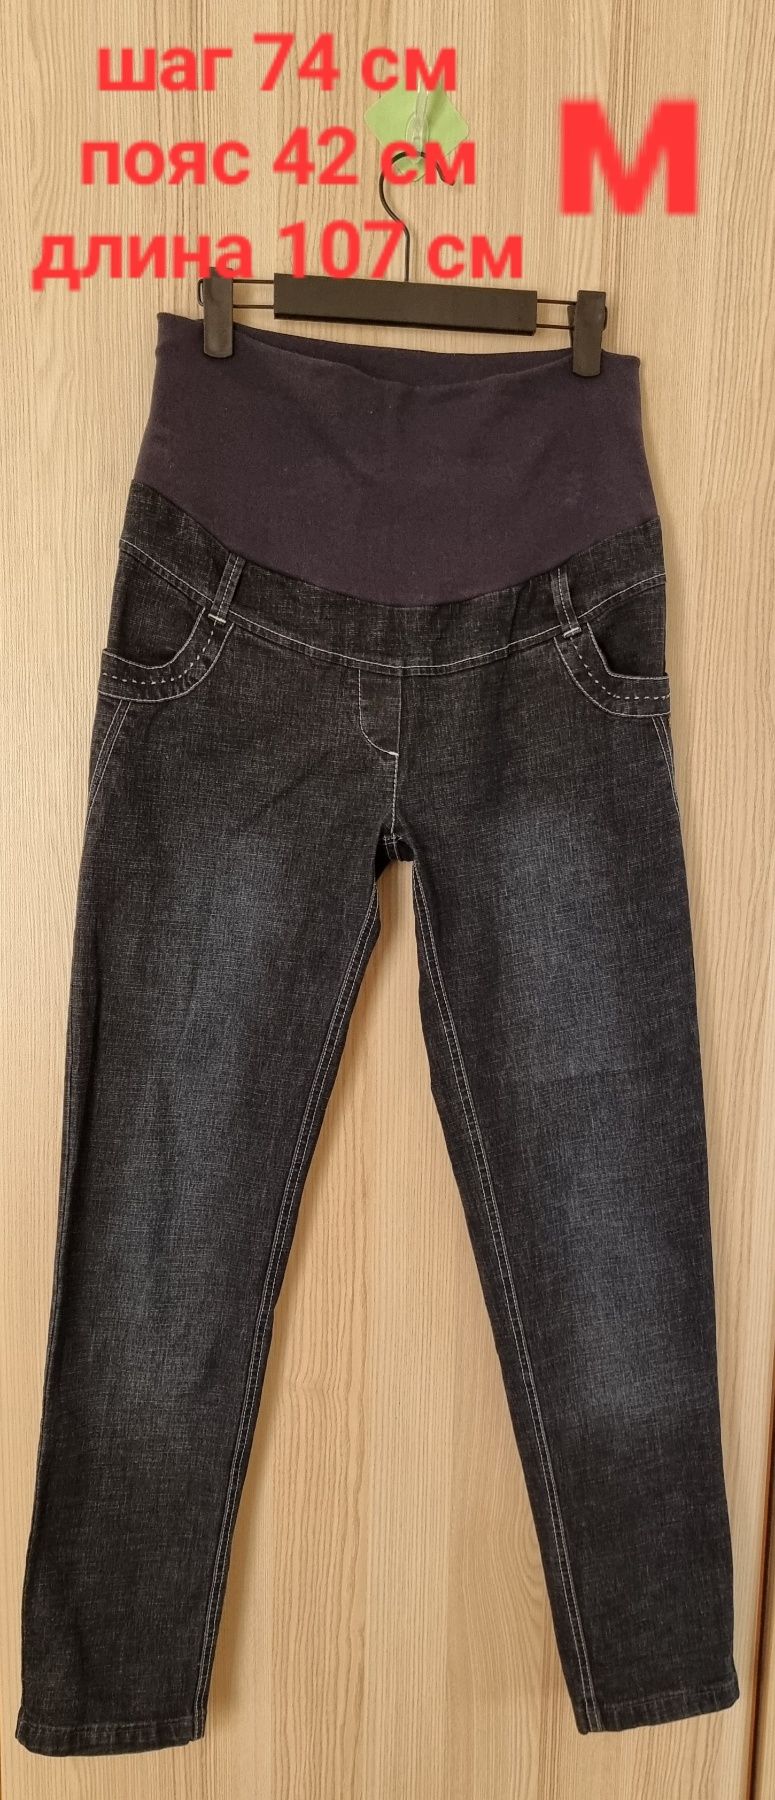 Рубашка штаны брюки для беременных джинсы M L XL